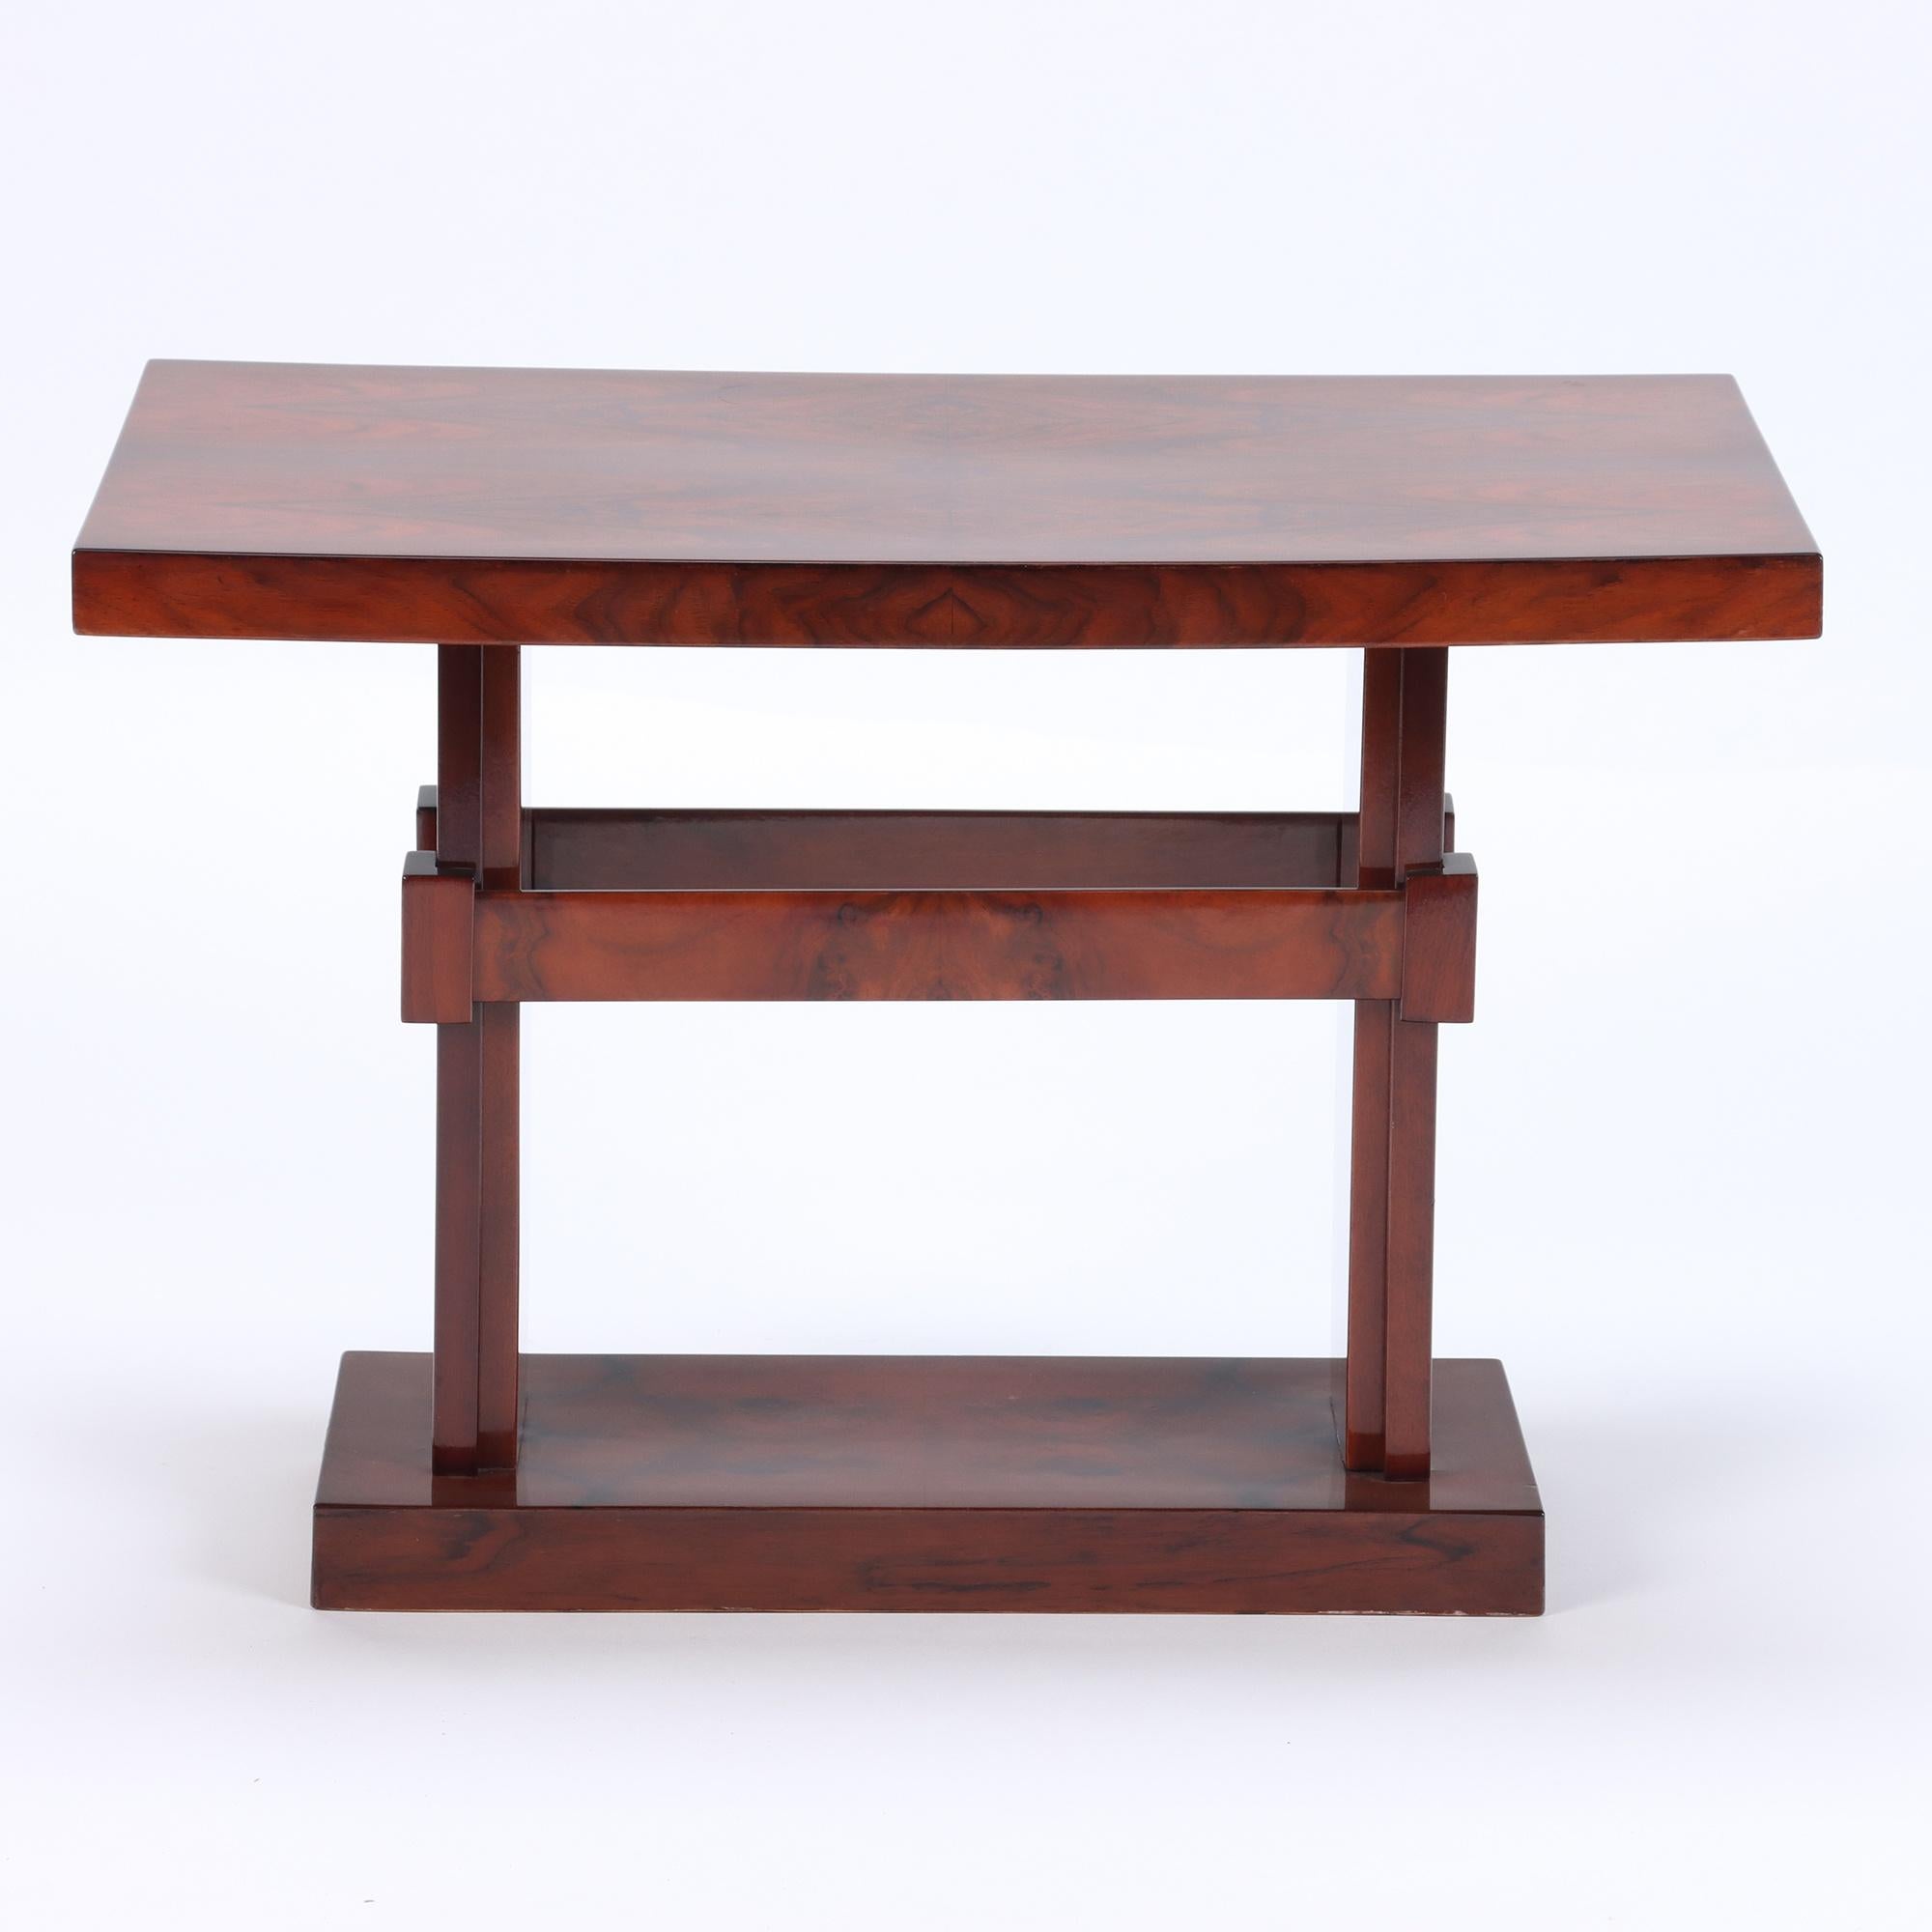 Une table basse française inhabituelle de forme rectiligne, datant de 1940, avec un plateau en bois de ronce exotique avec une finition polie française récente.